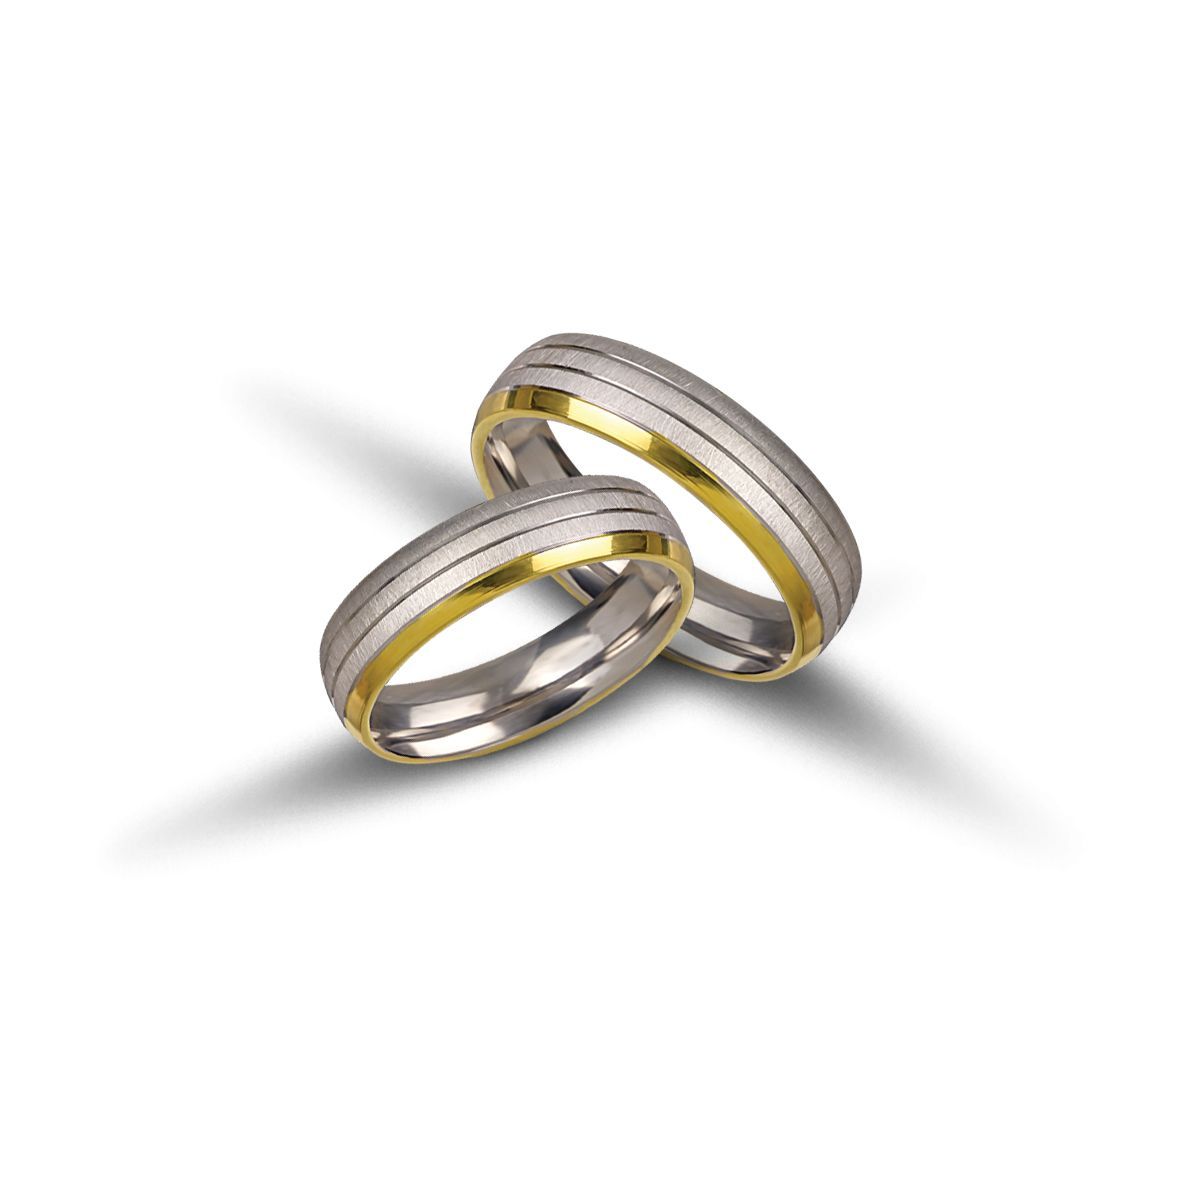 White gold & gold wedding rings 5mm  (code VK2007/50)